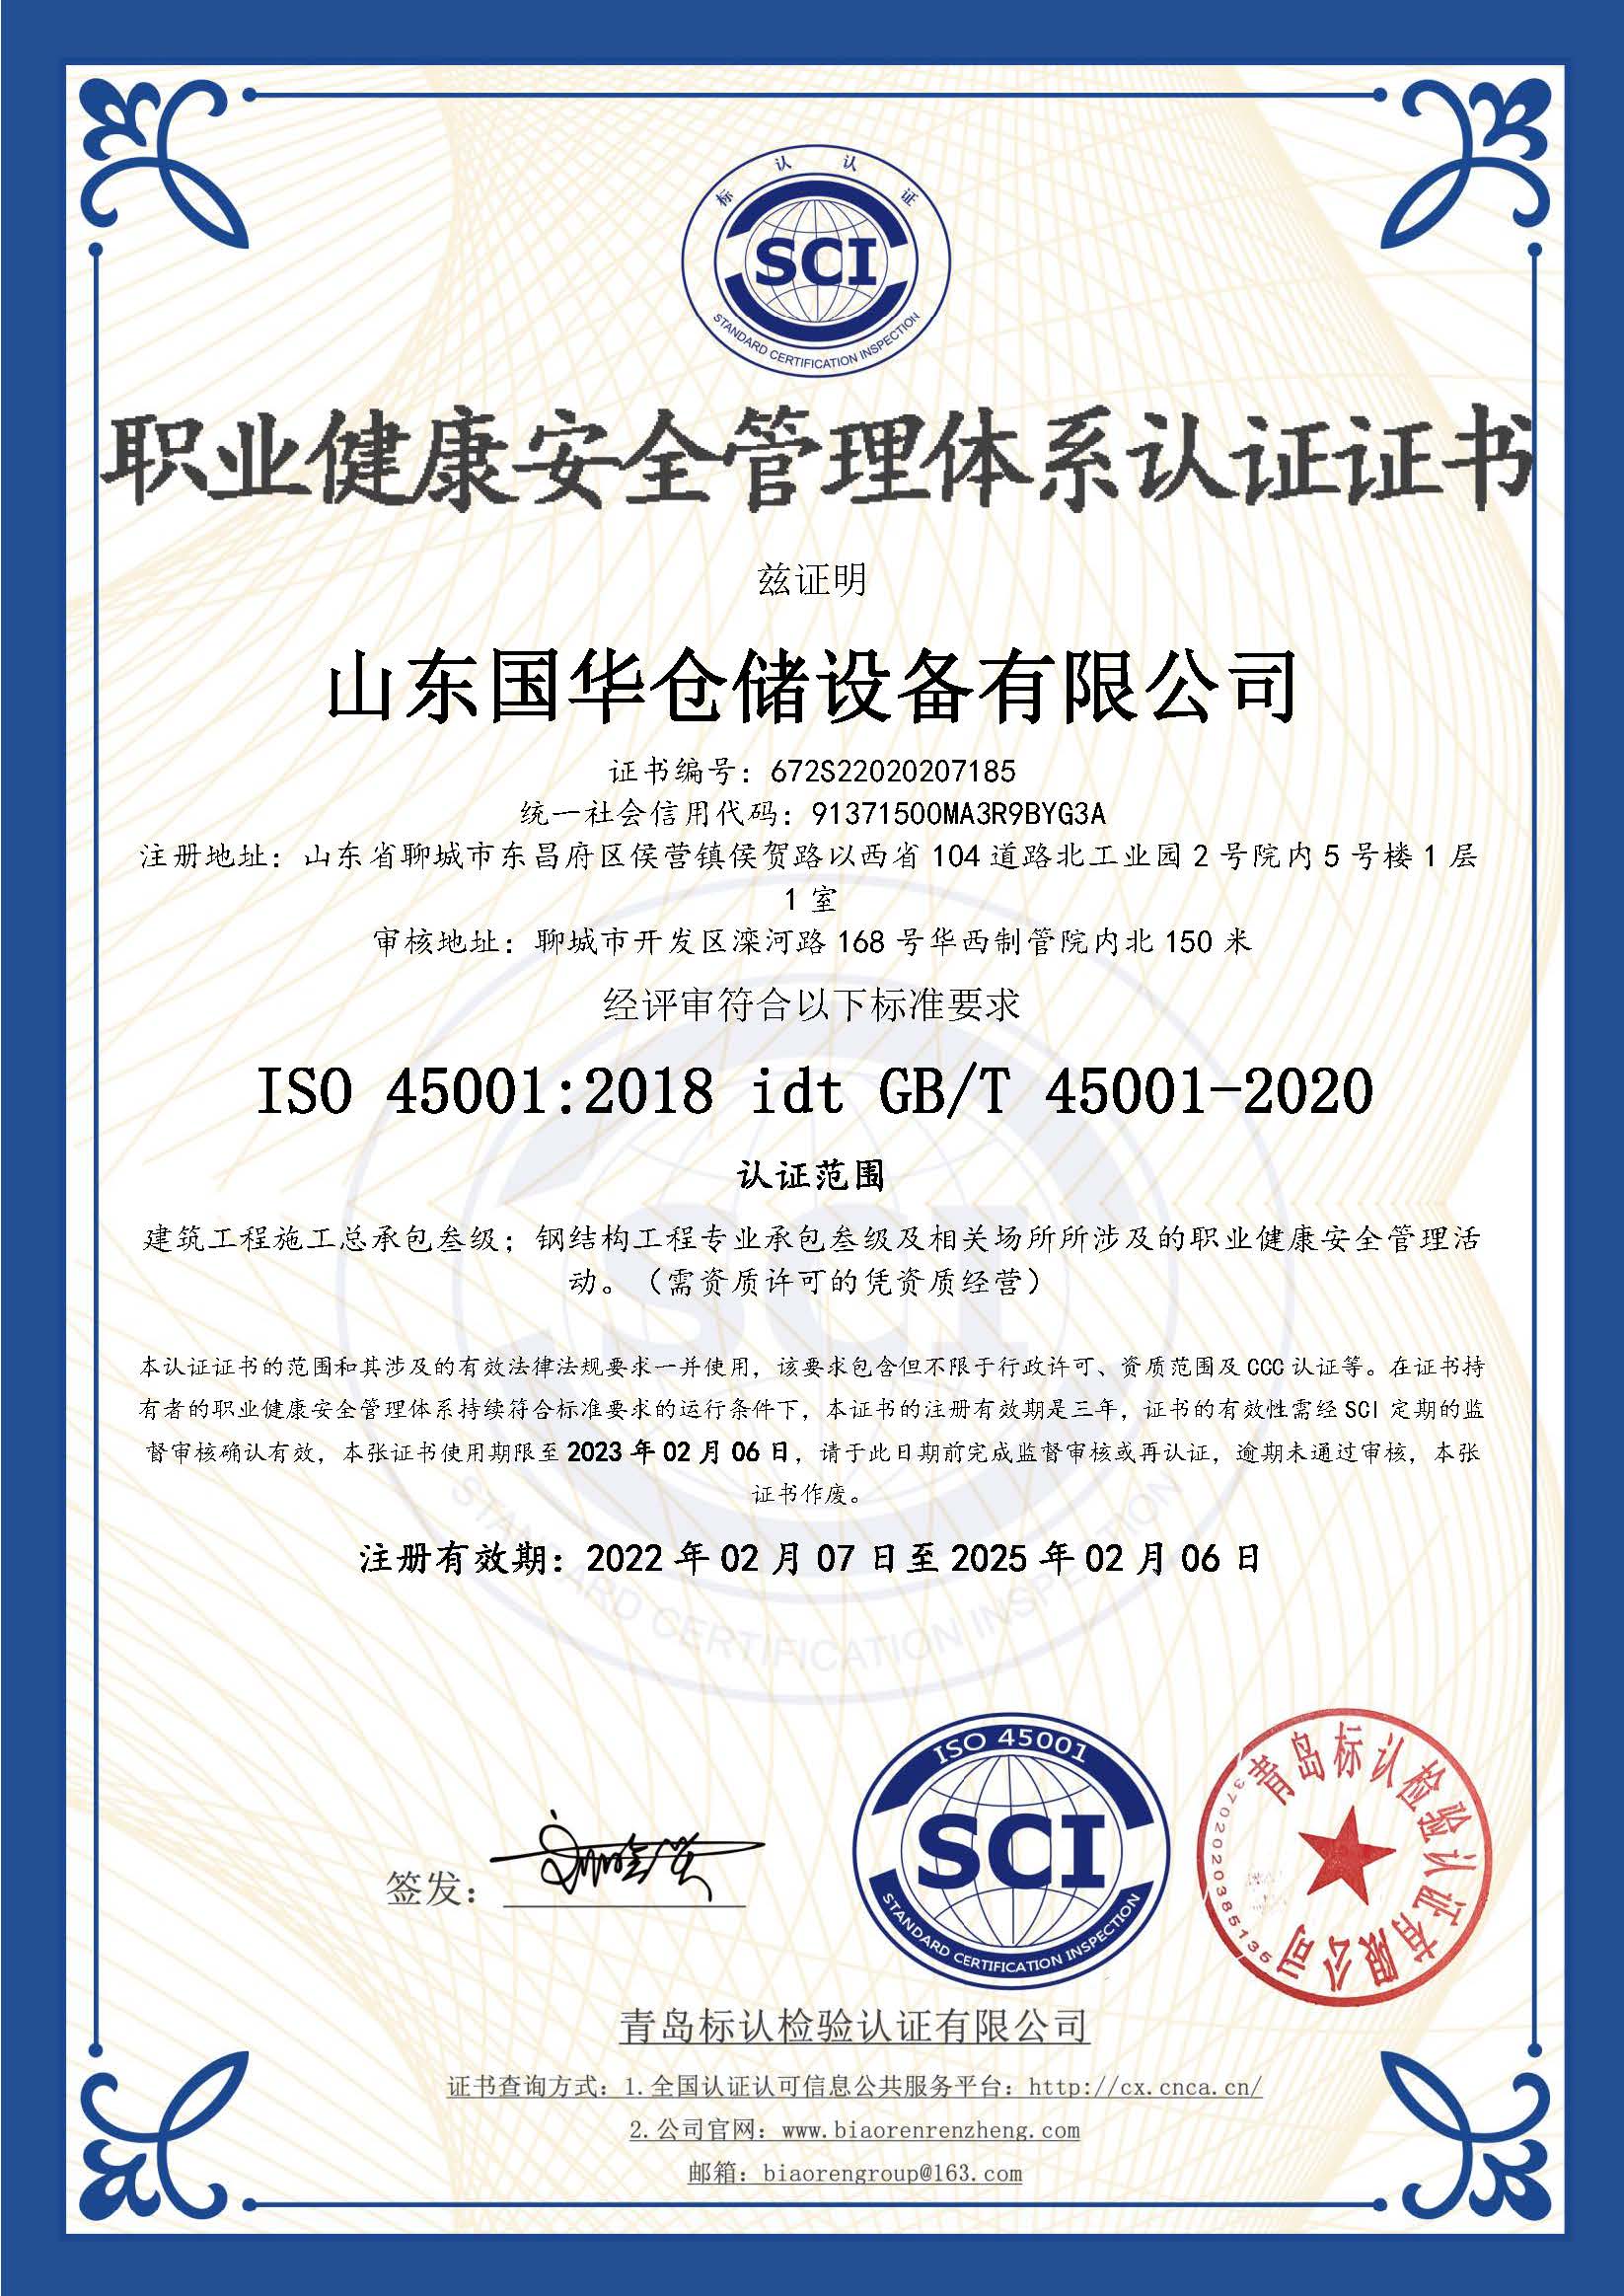 哈尔滨钢板仓职业健康安全管理体系认证证书